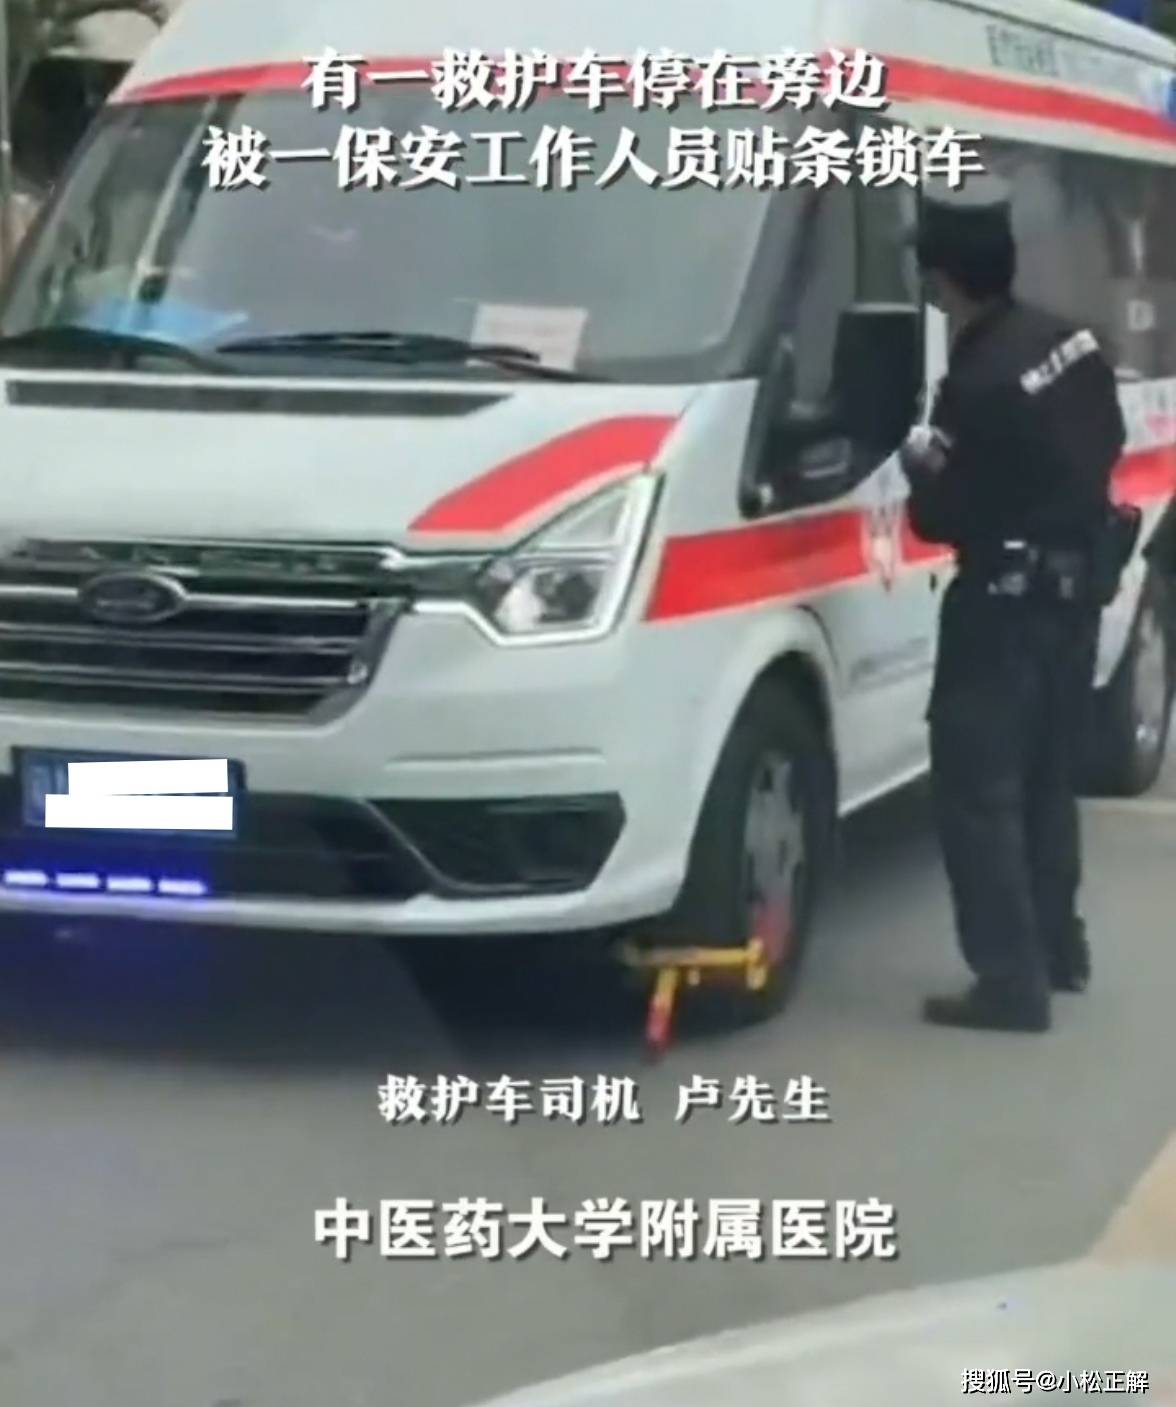 广州救护车停医院被保安锁车贴条引争议保安妨碍交通就得锁